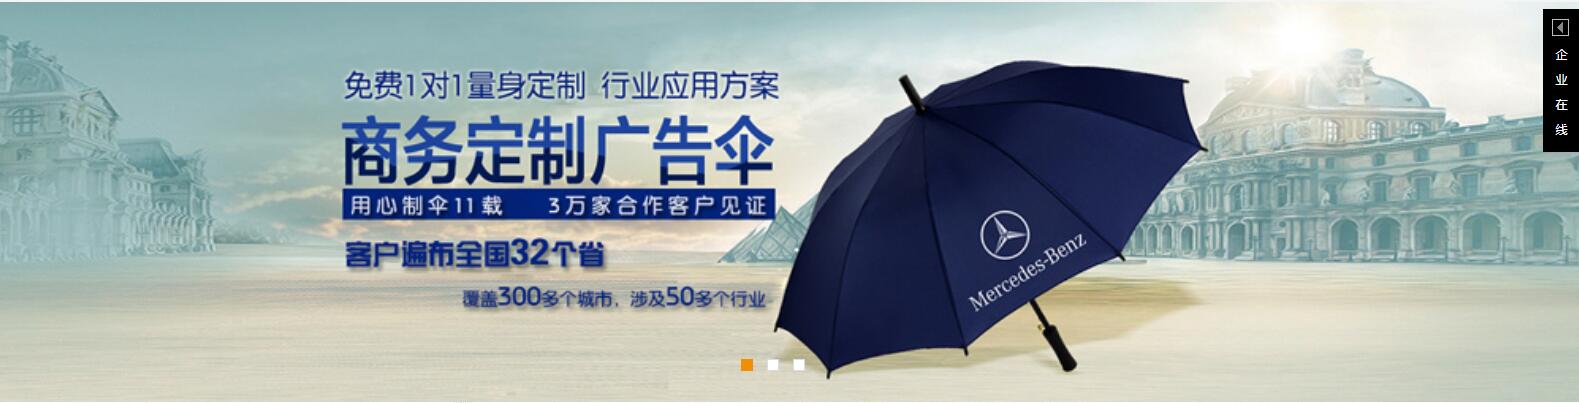 广州雨伞批发市场，广州雨伞厂批发价格